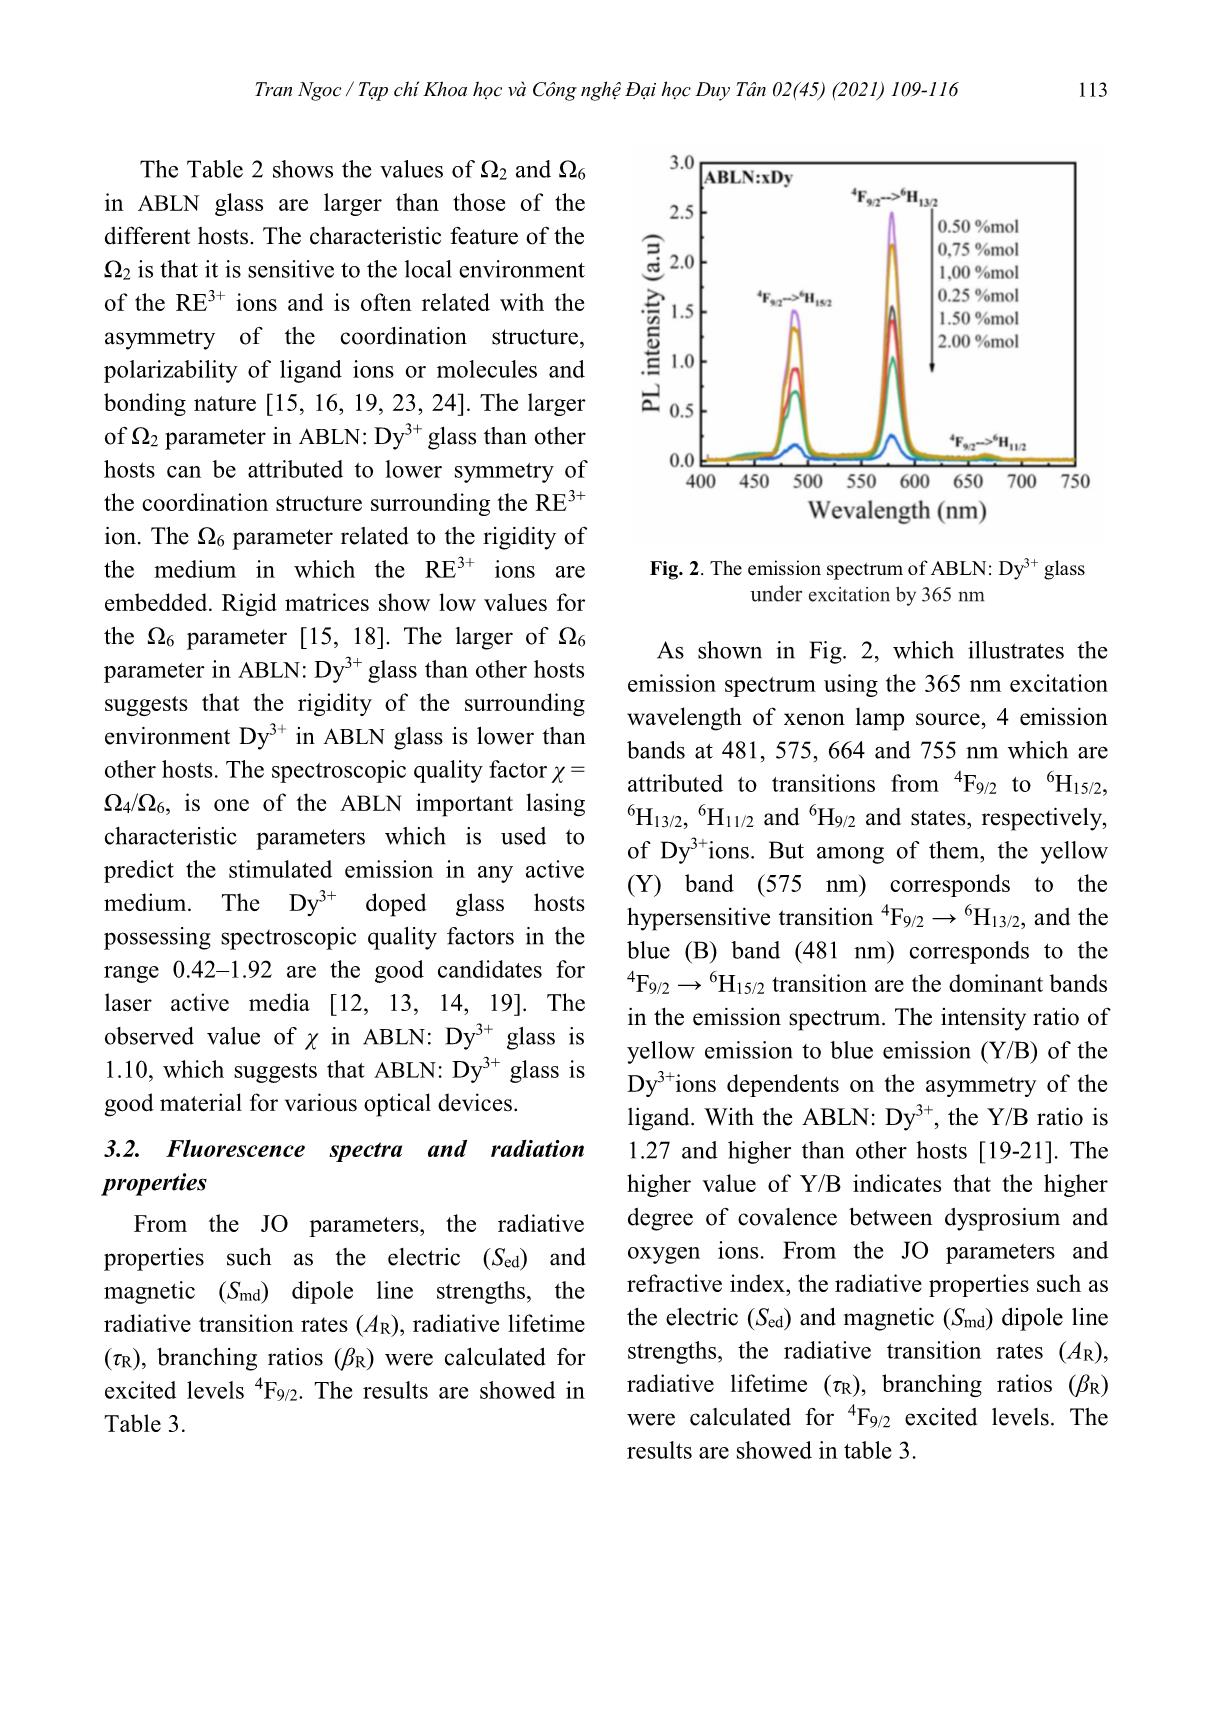 Sử dụng lý thuyết Judd-Ofelt để phân tích phổ về cấu trúc mạng của thủy tinh lithium-sodium aluminoborate glass pha tạp ion Dy+3 trang 5